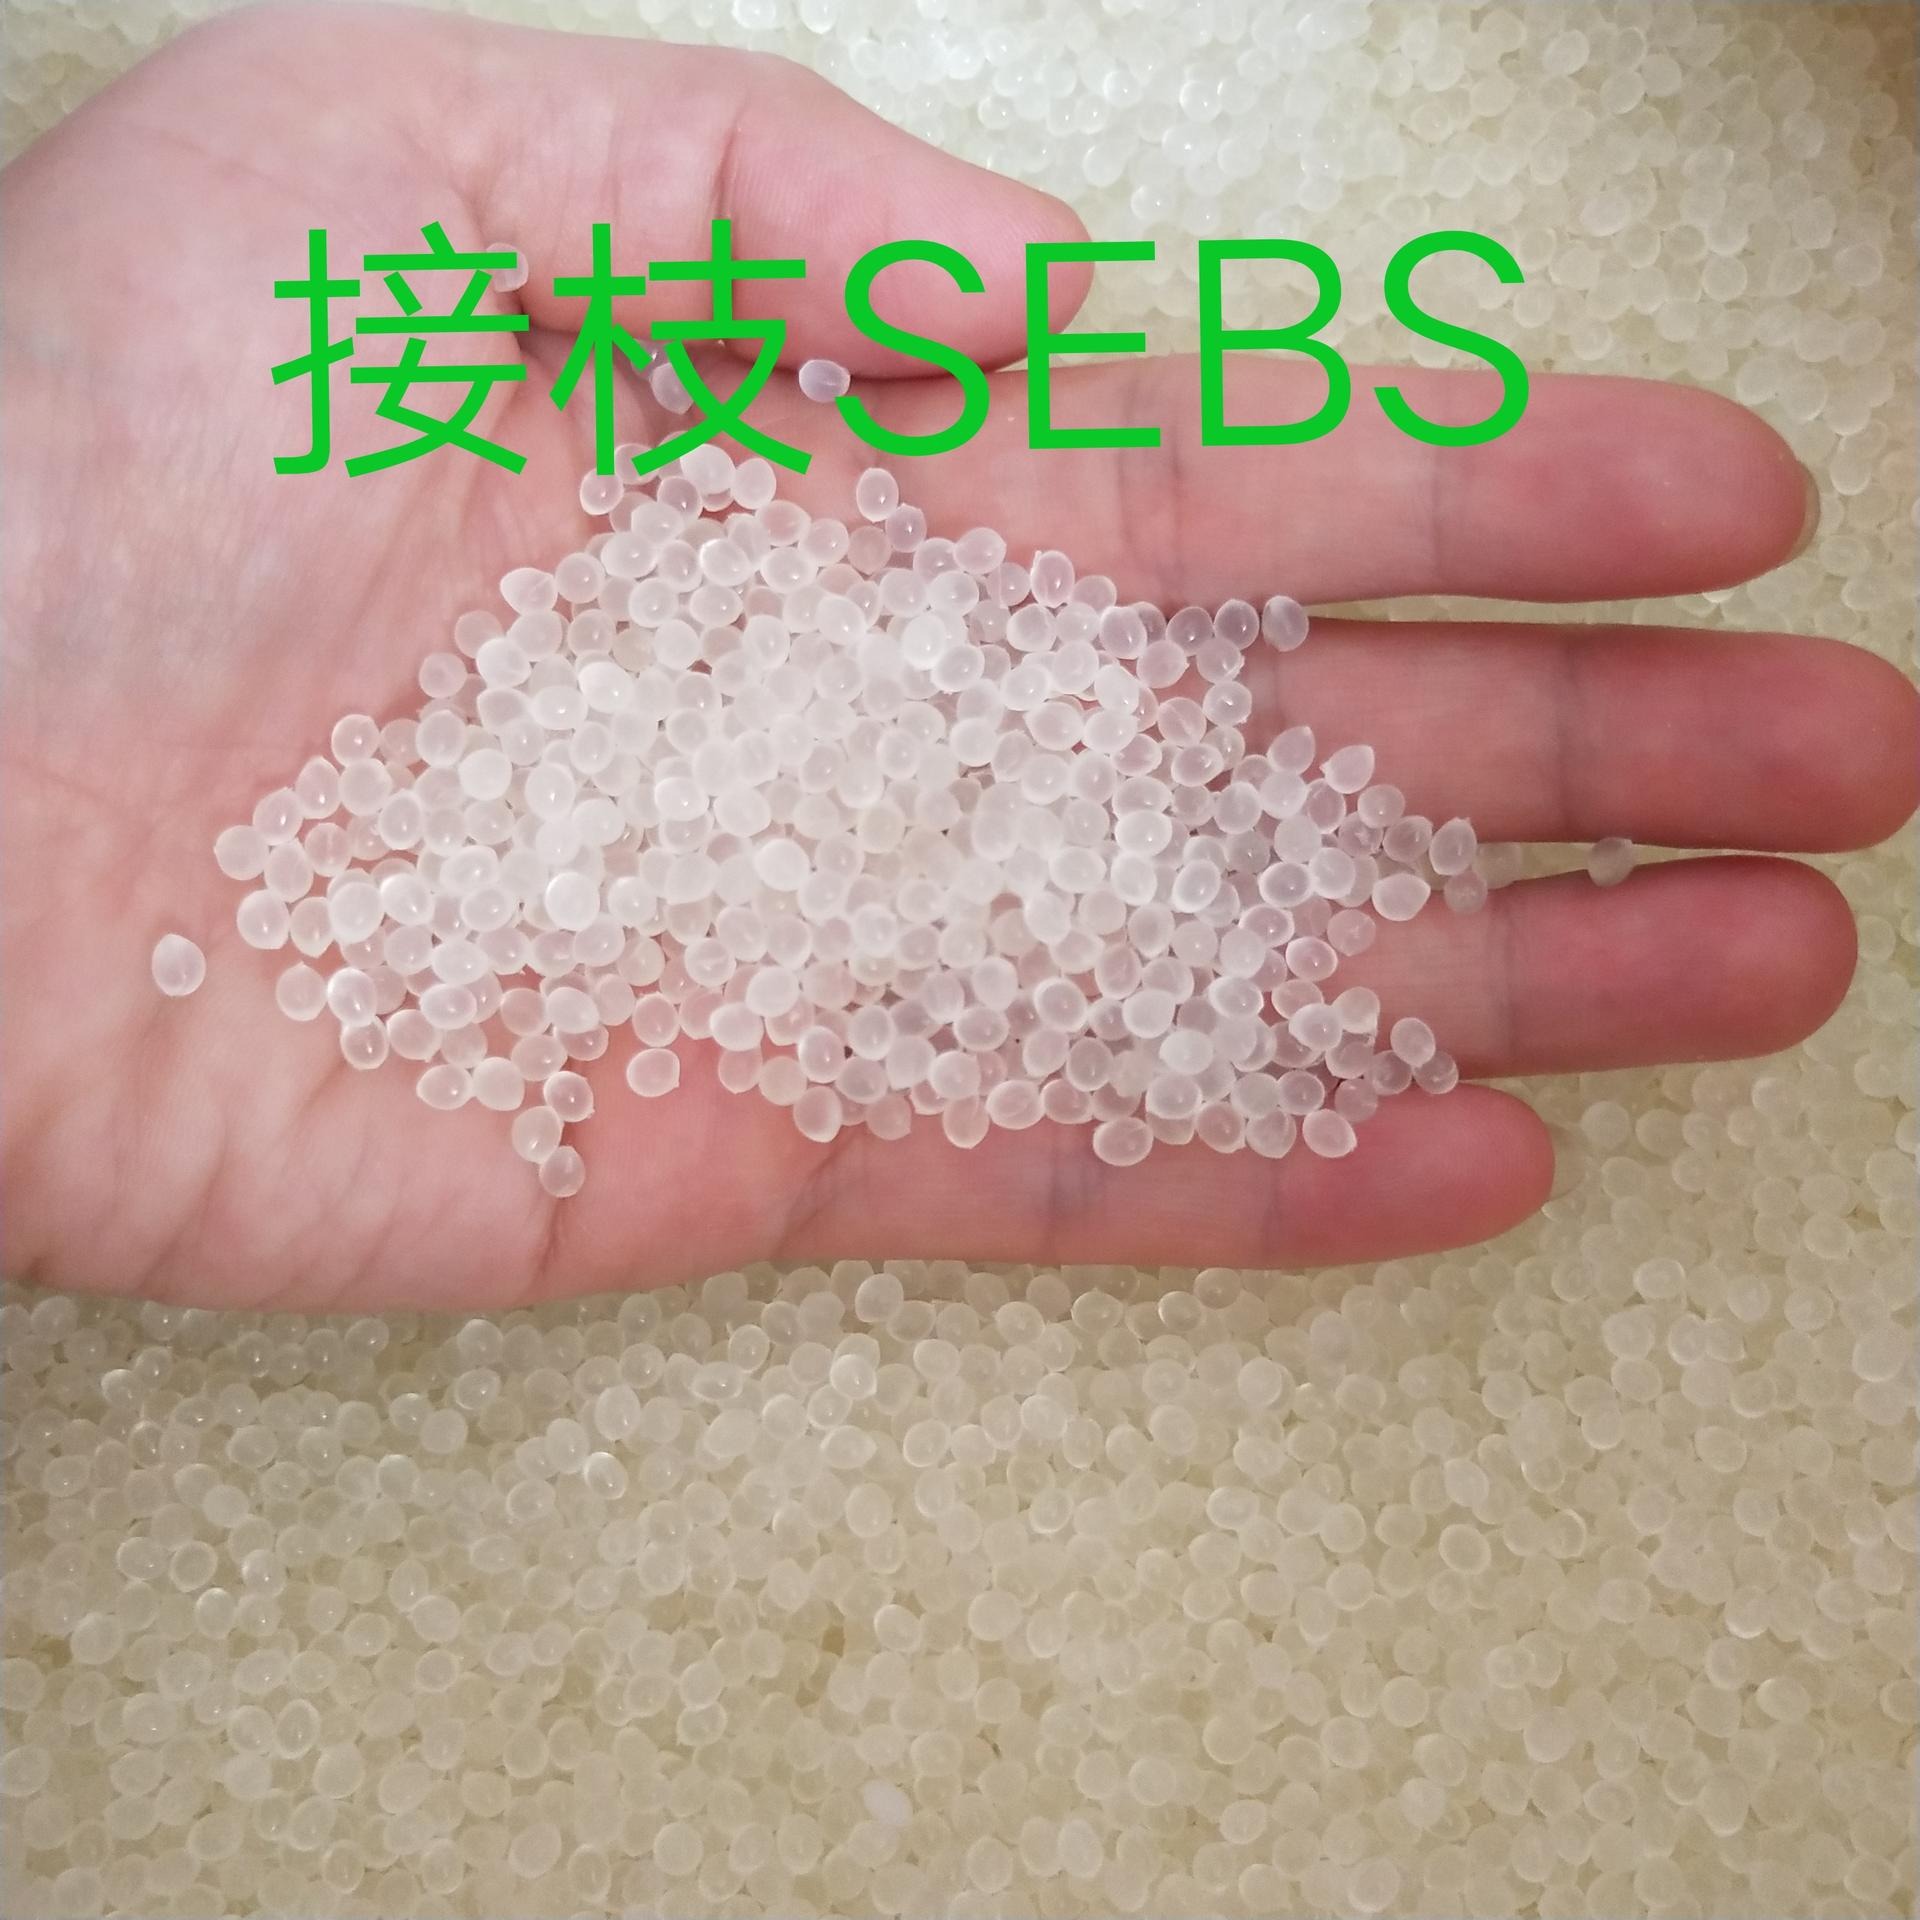 包胶增黏剂  酸酐接枝级SEBS  国产SEBS颗粒相容剂   SEBS粒料价格  SEBS胶粒生产厂家